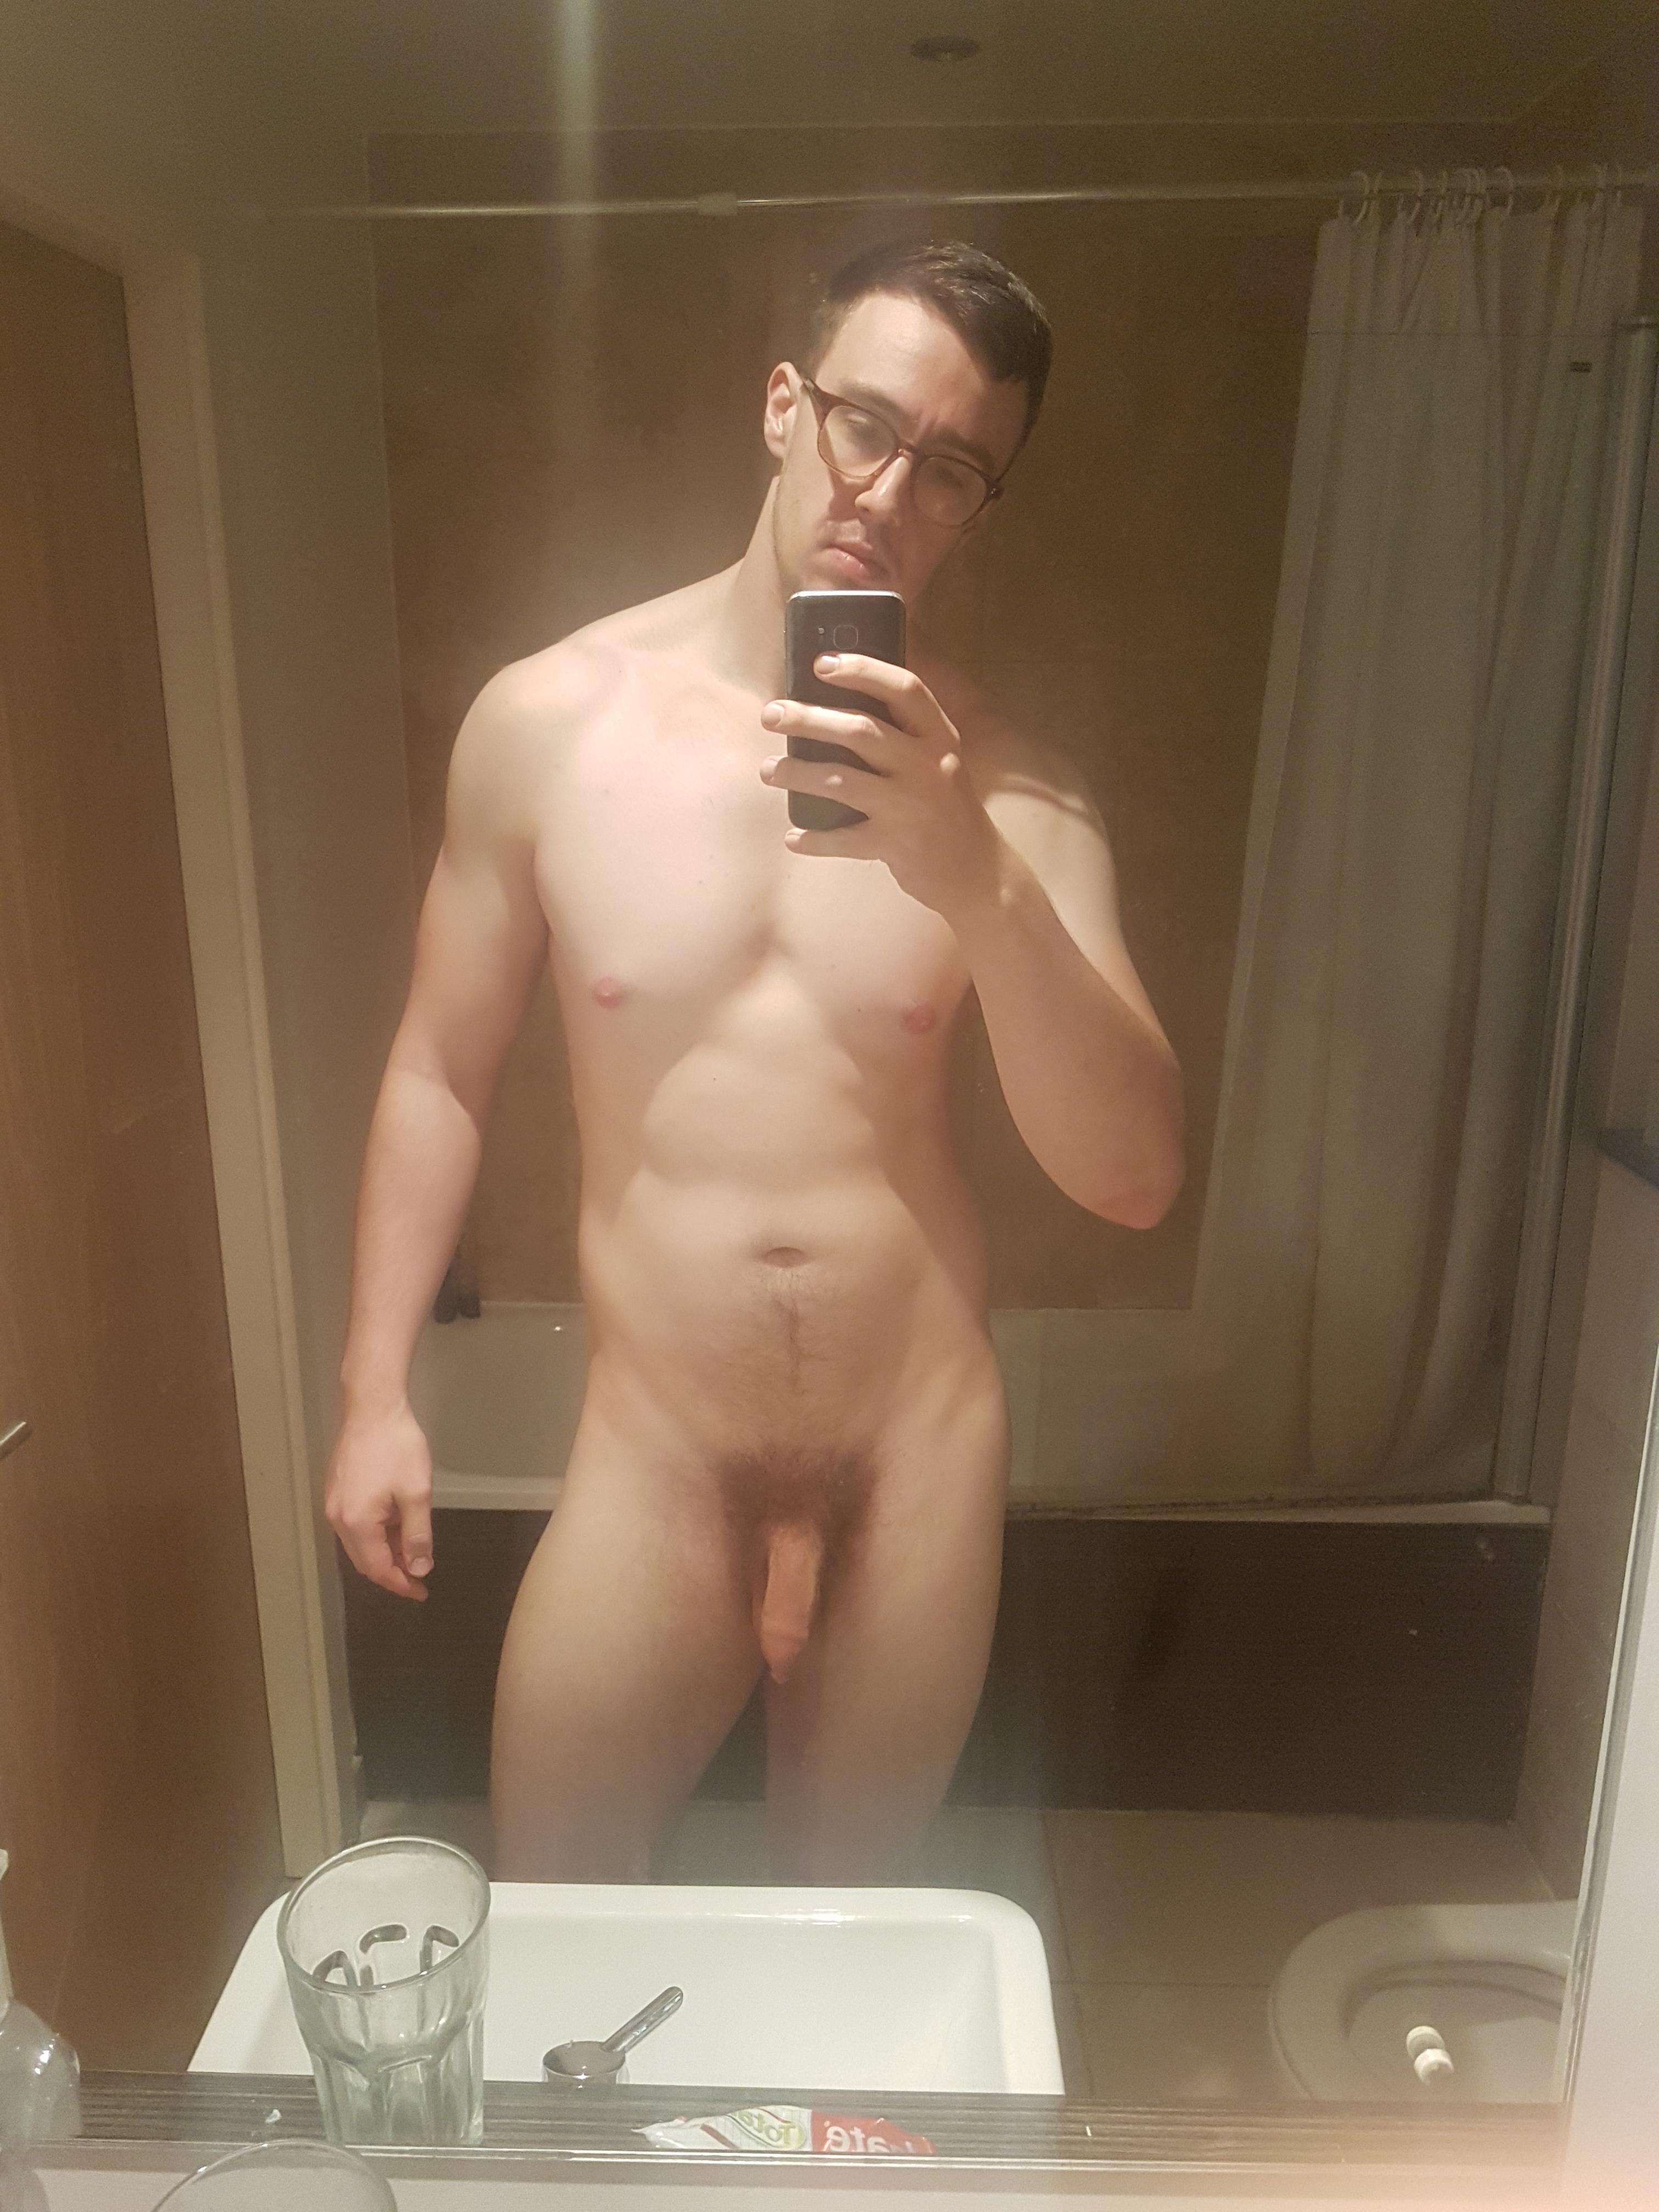 First time posting here, I'm bi, 6'6" and 112kg. Should I post here again?